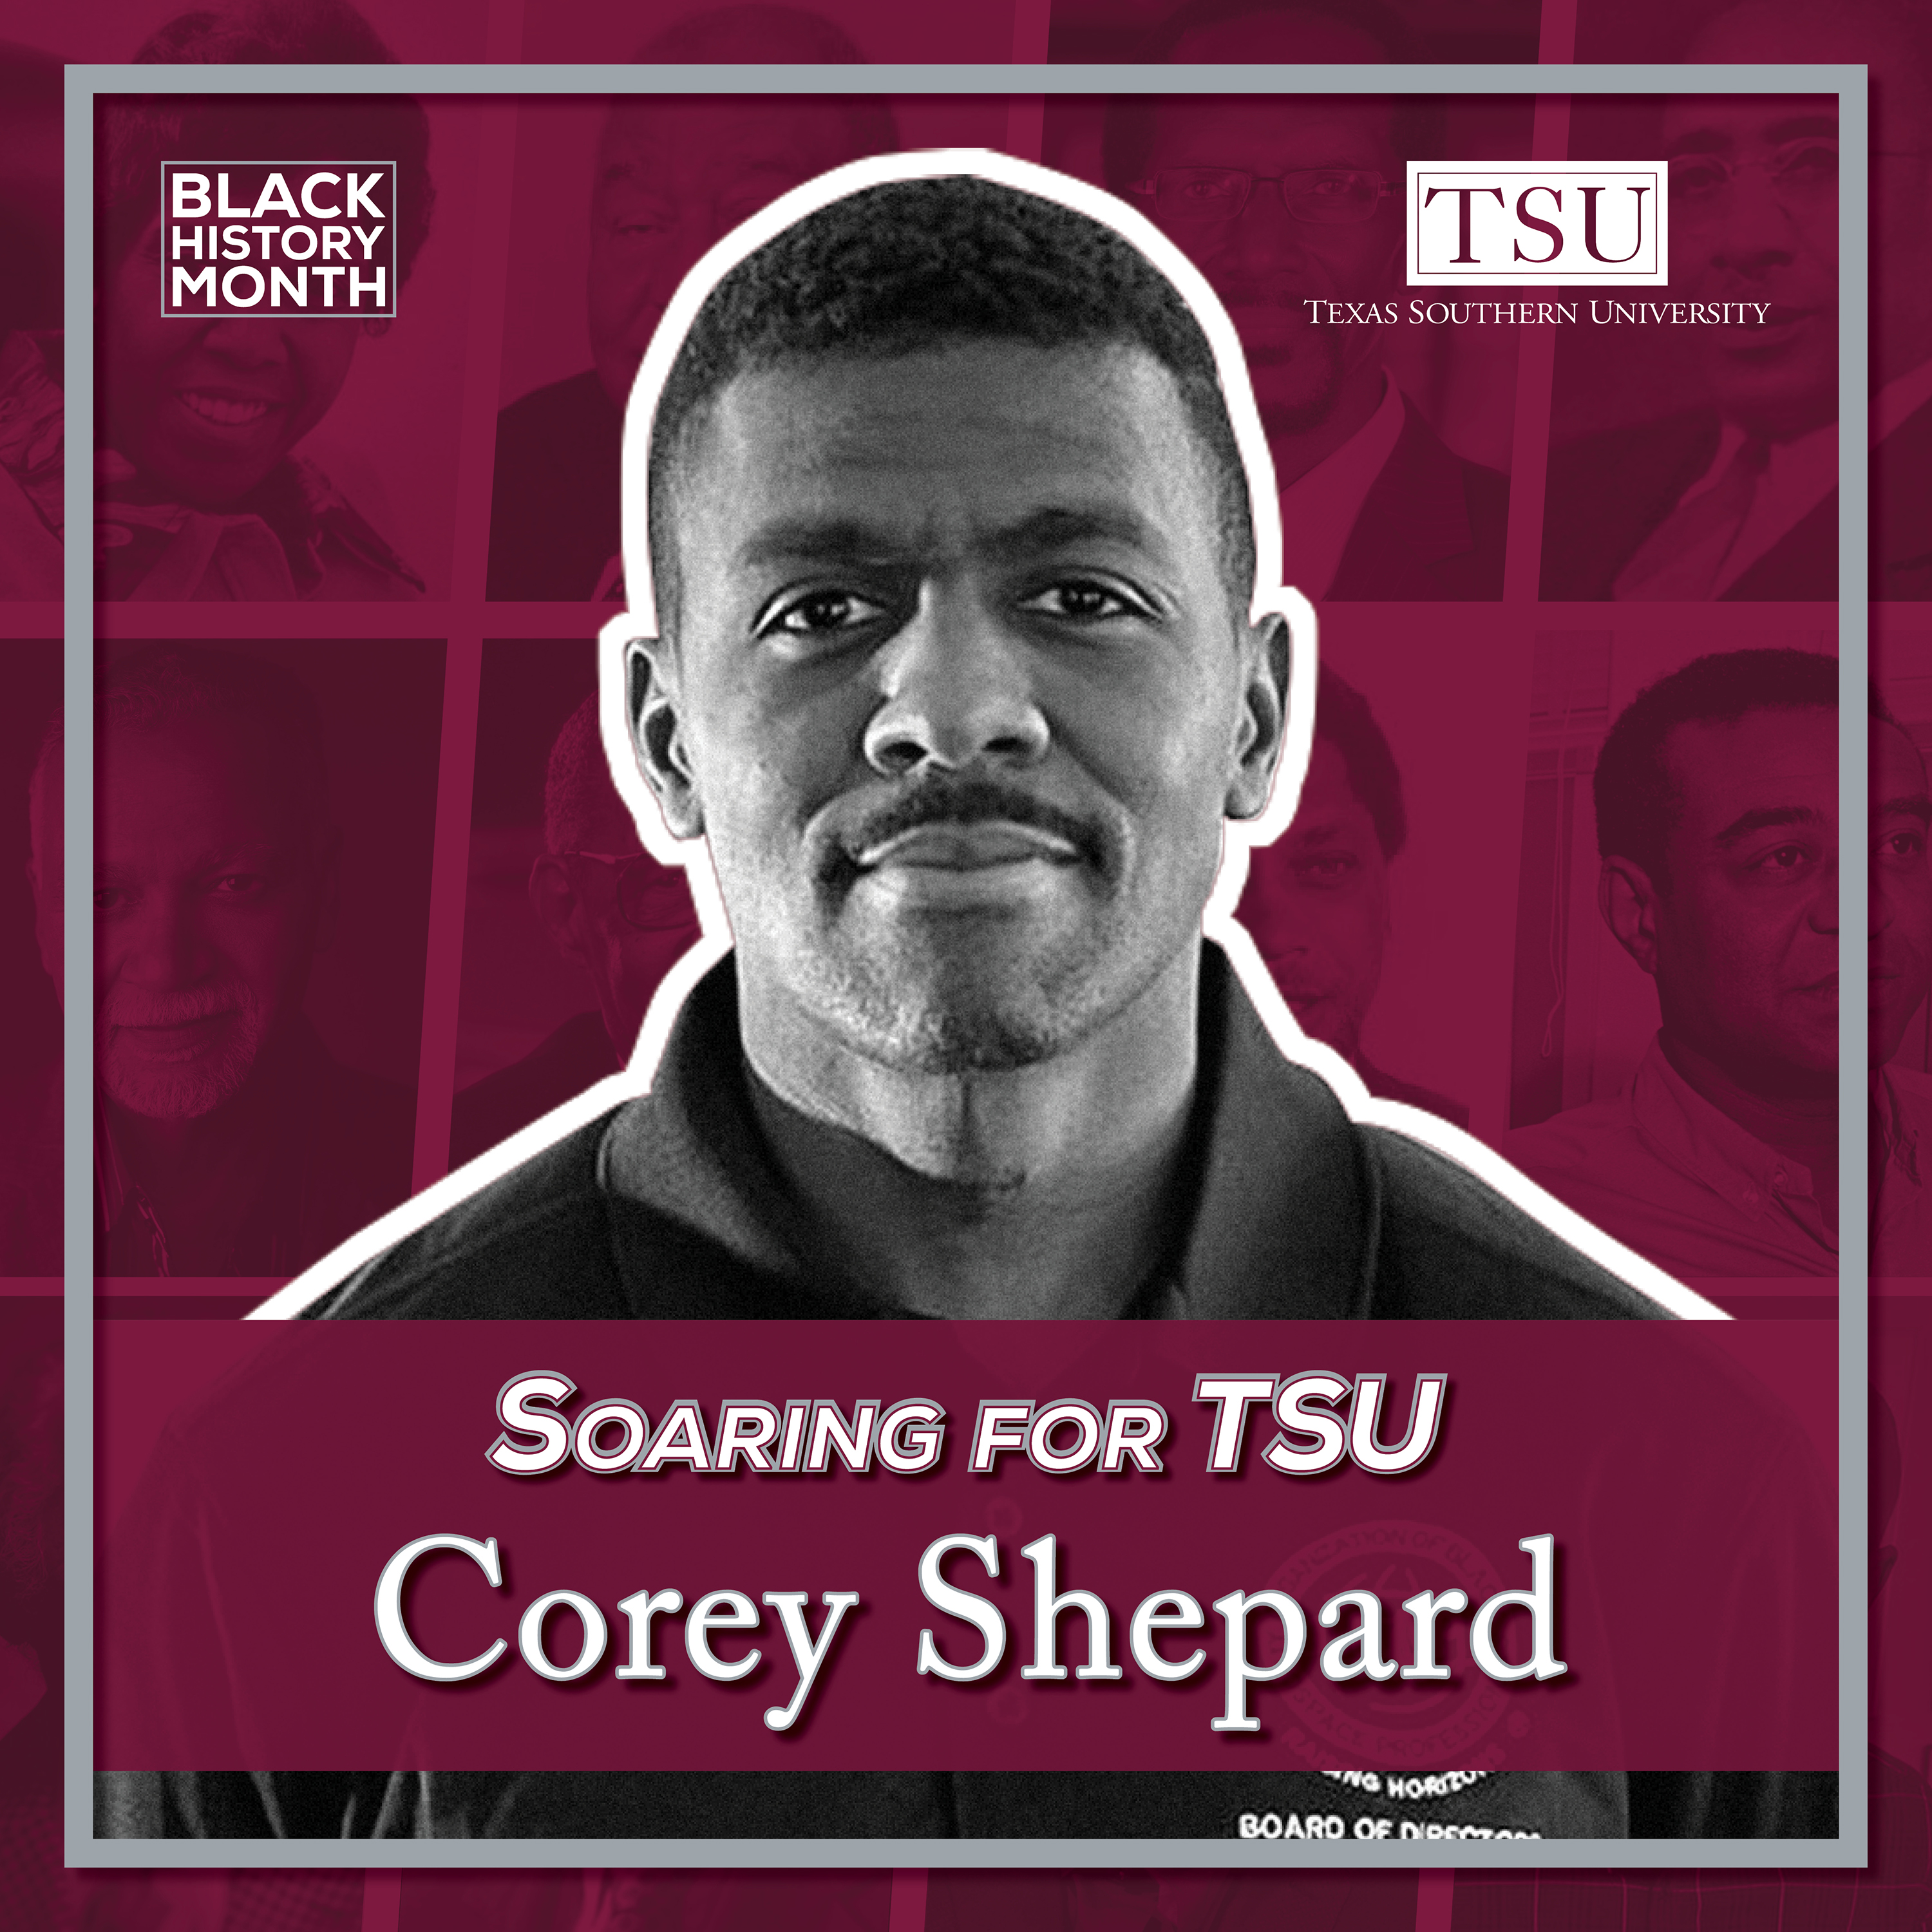 Corey Shepard